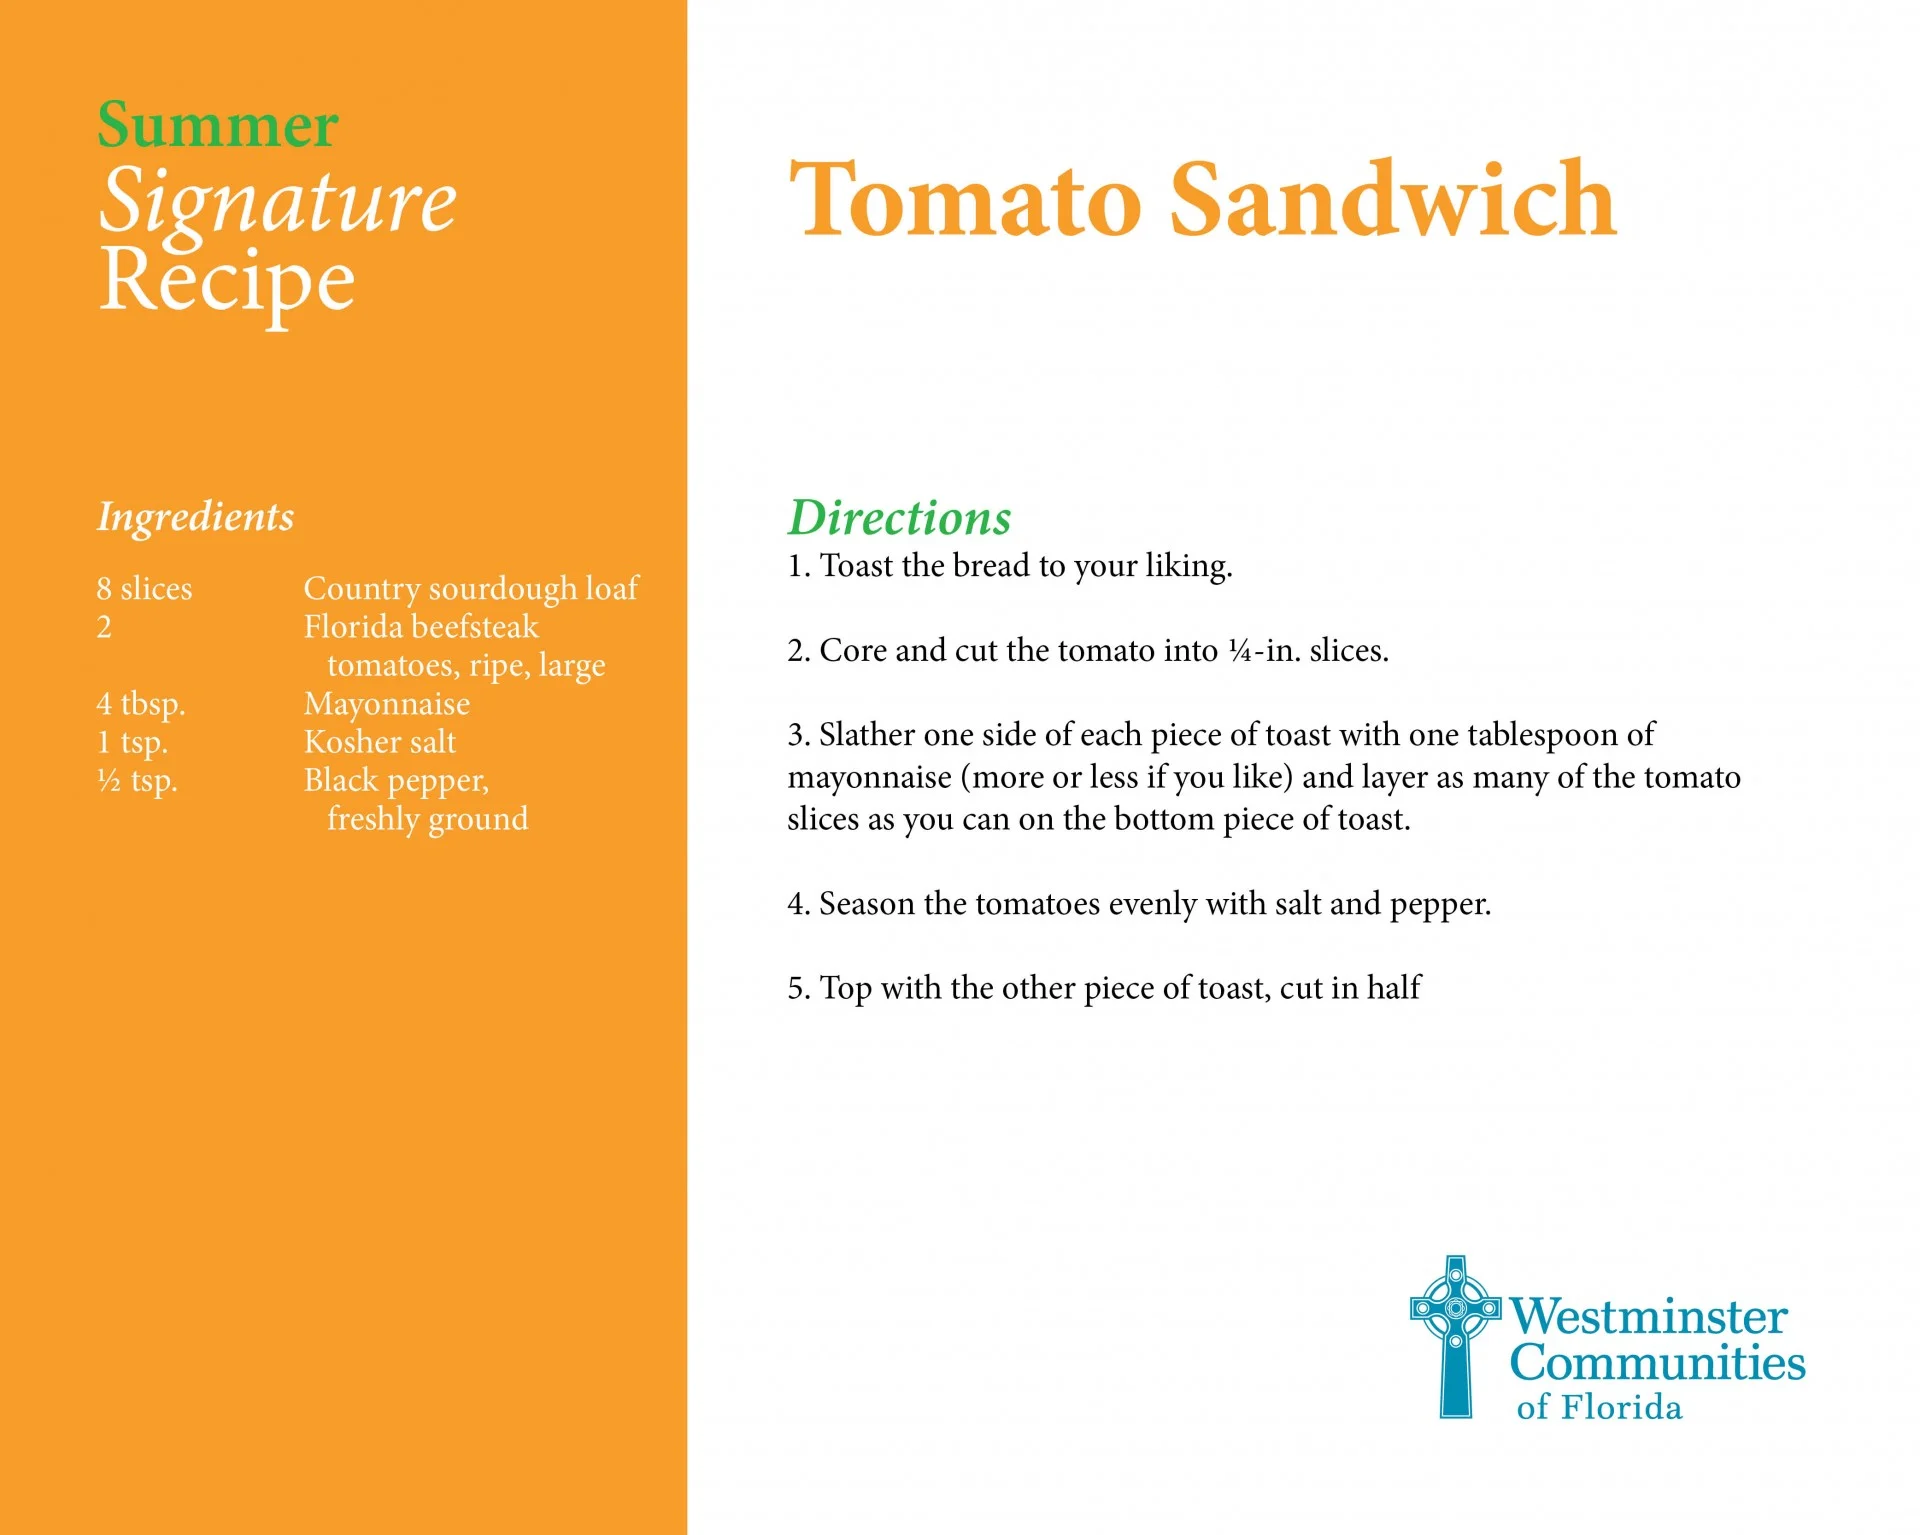 Our Signature Tomato Sandwich